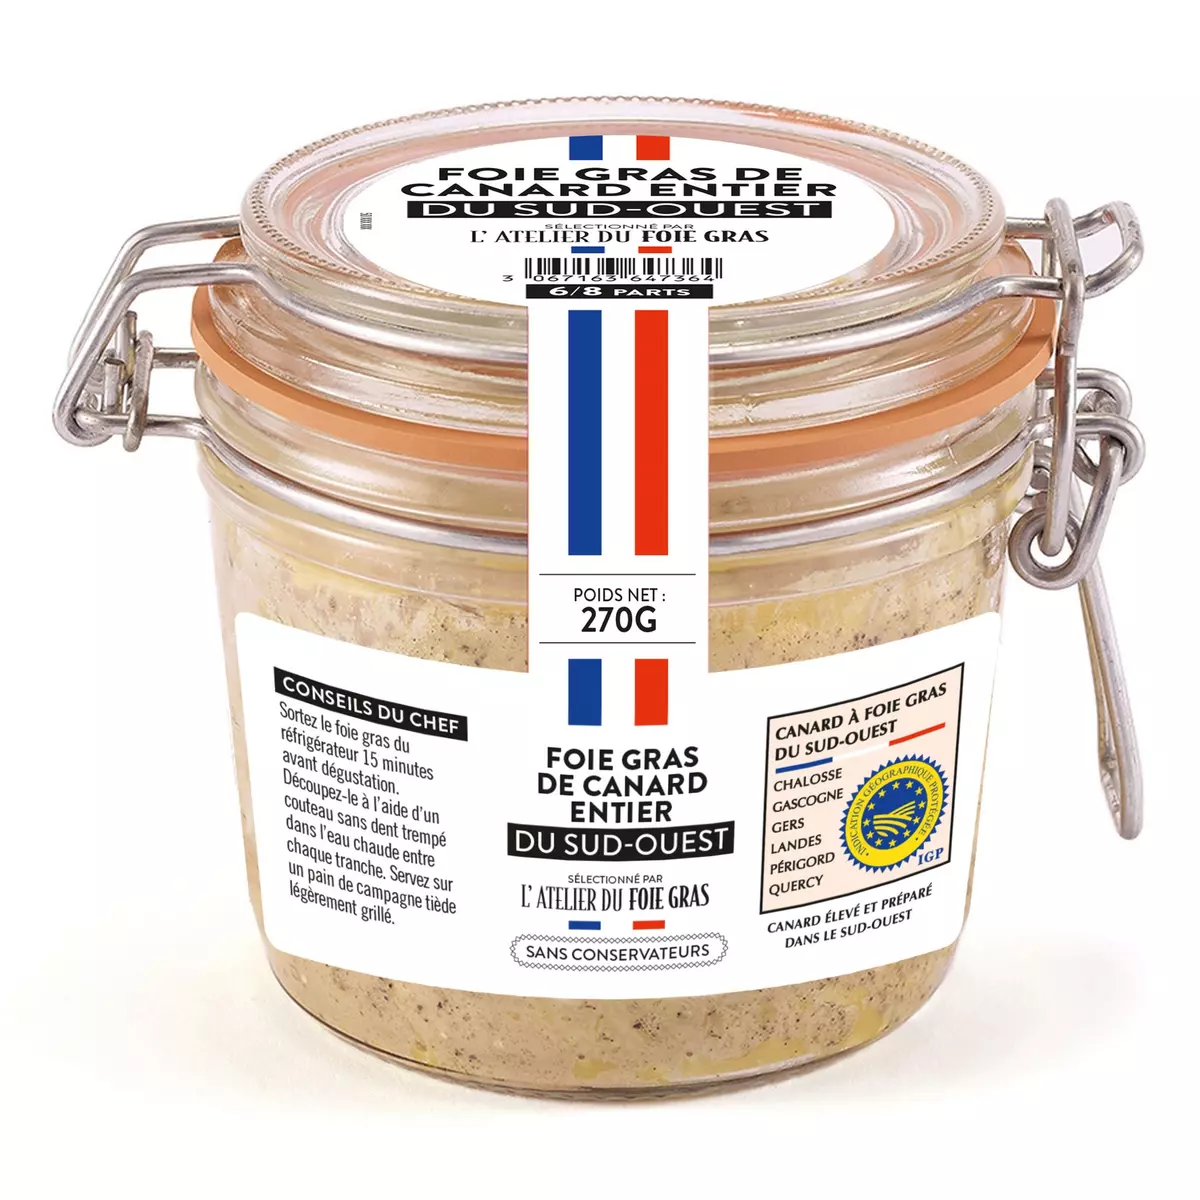 L'ATELIER DU FOIE GRAS Foie gras entier de canard du Sud-Ouest 270g